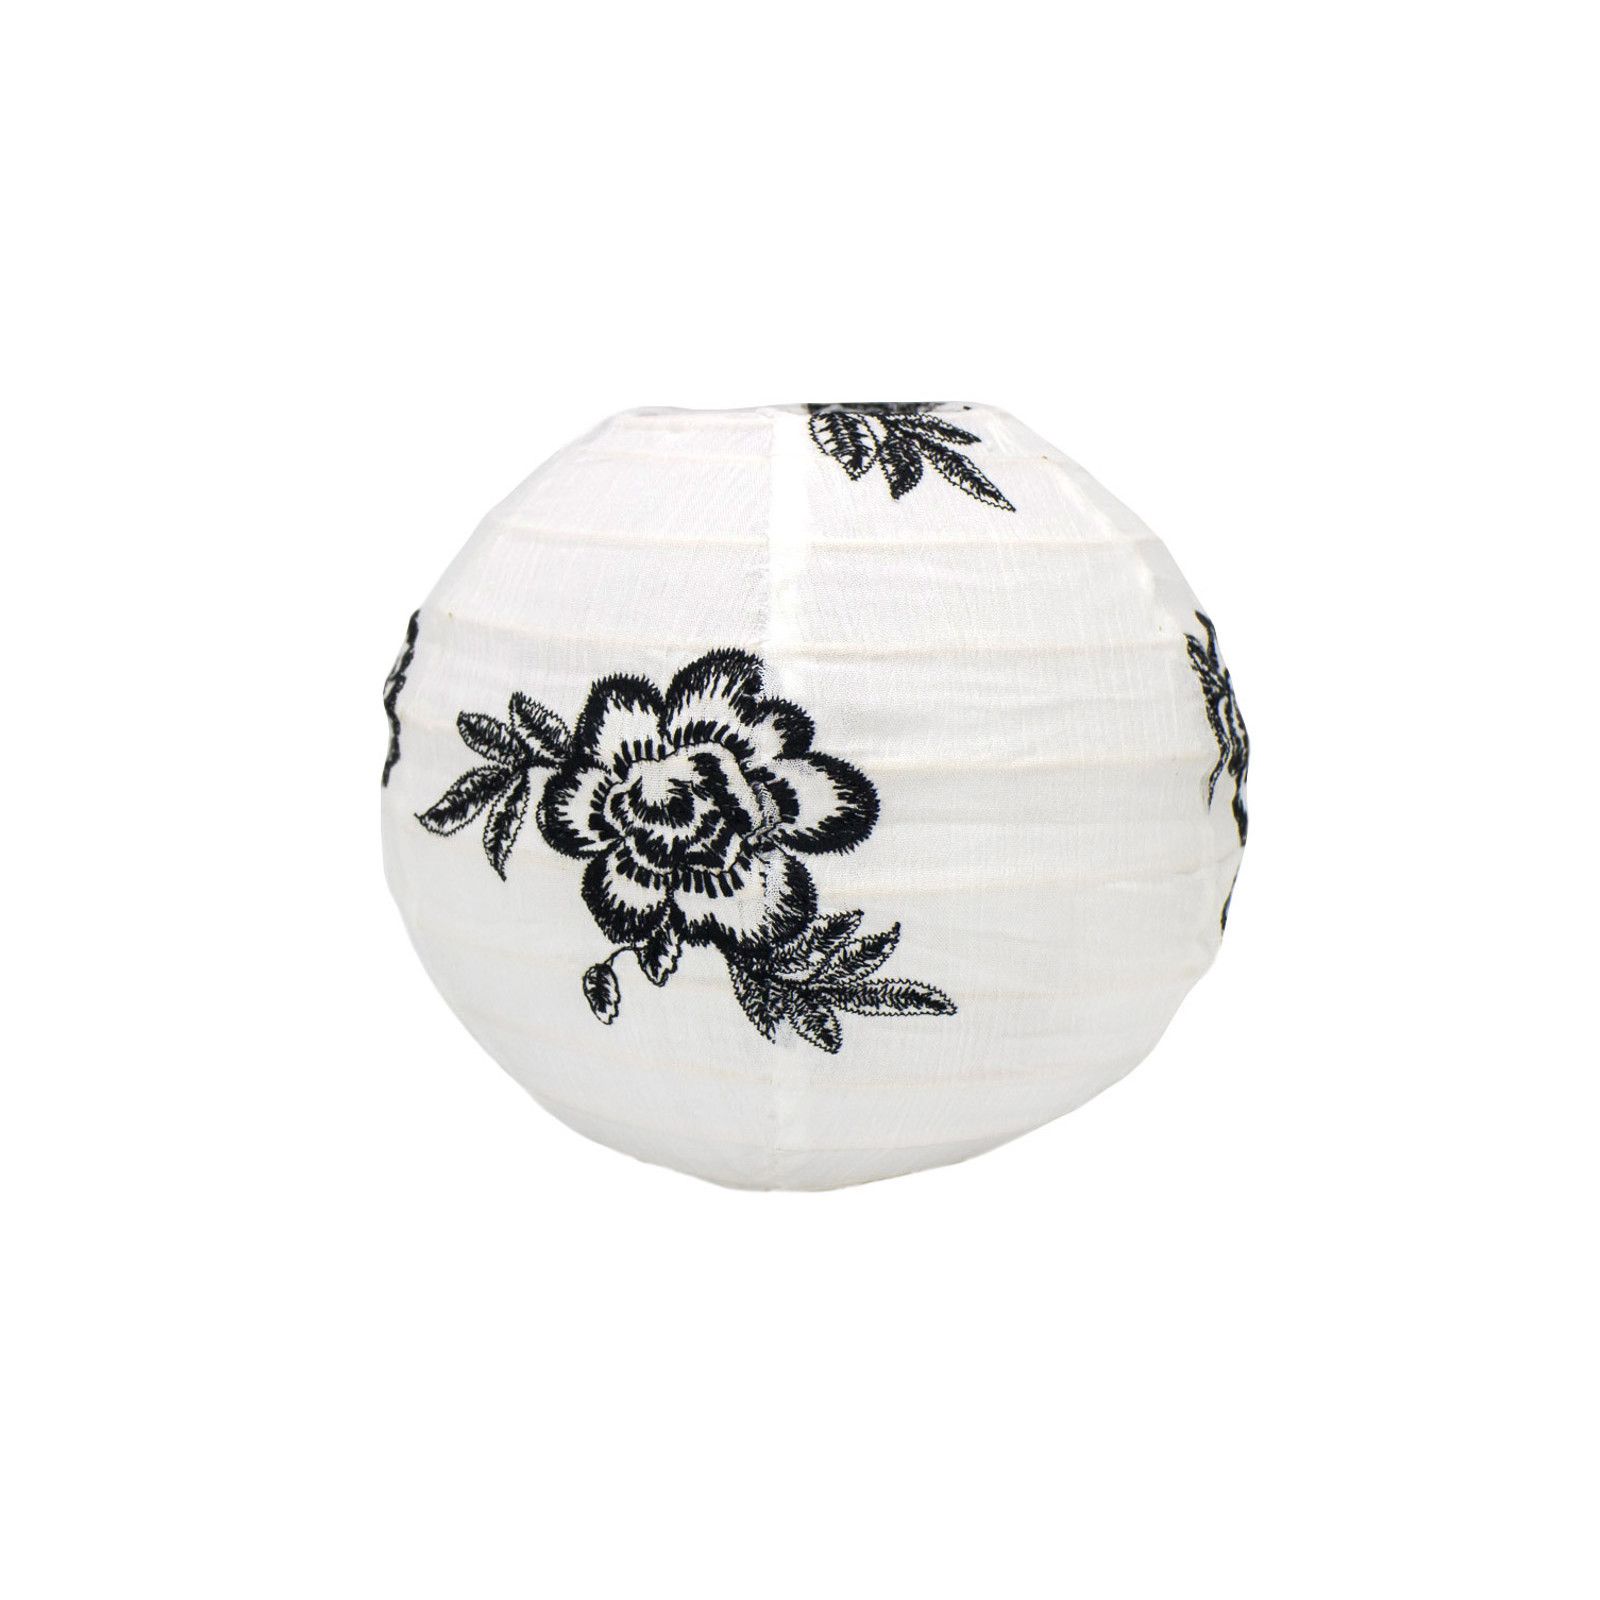 Lampion tissu boule japonaise mini rond blanc et roses noires brodées